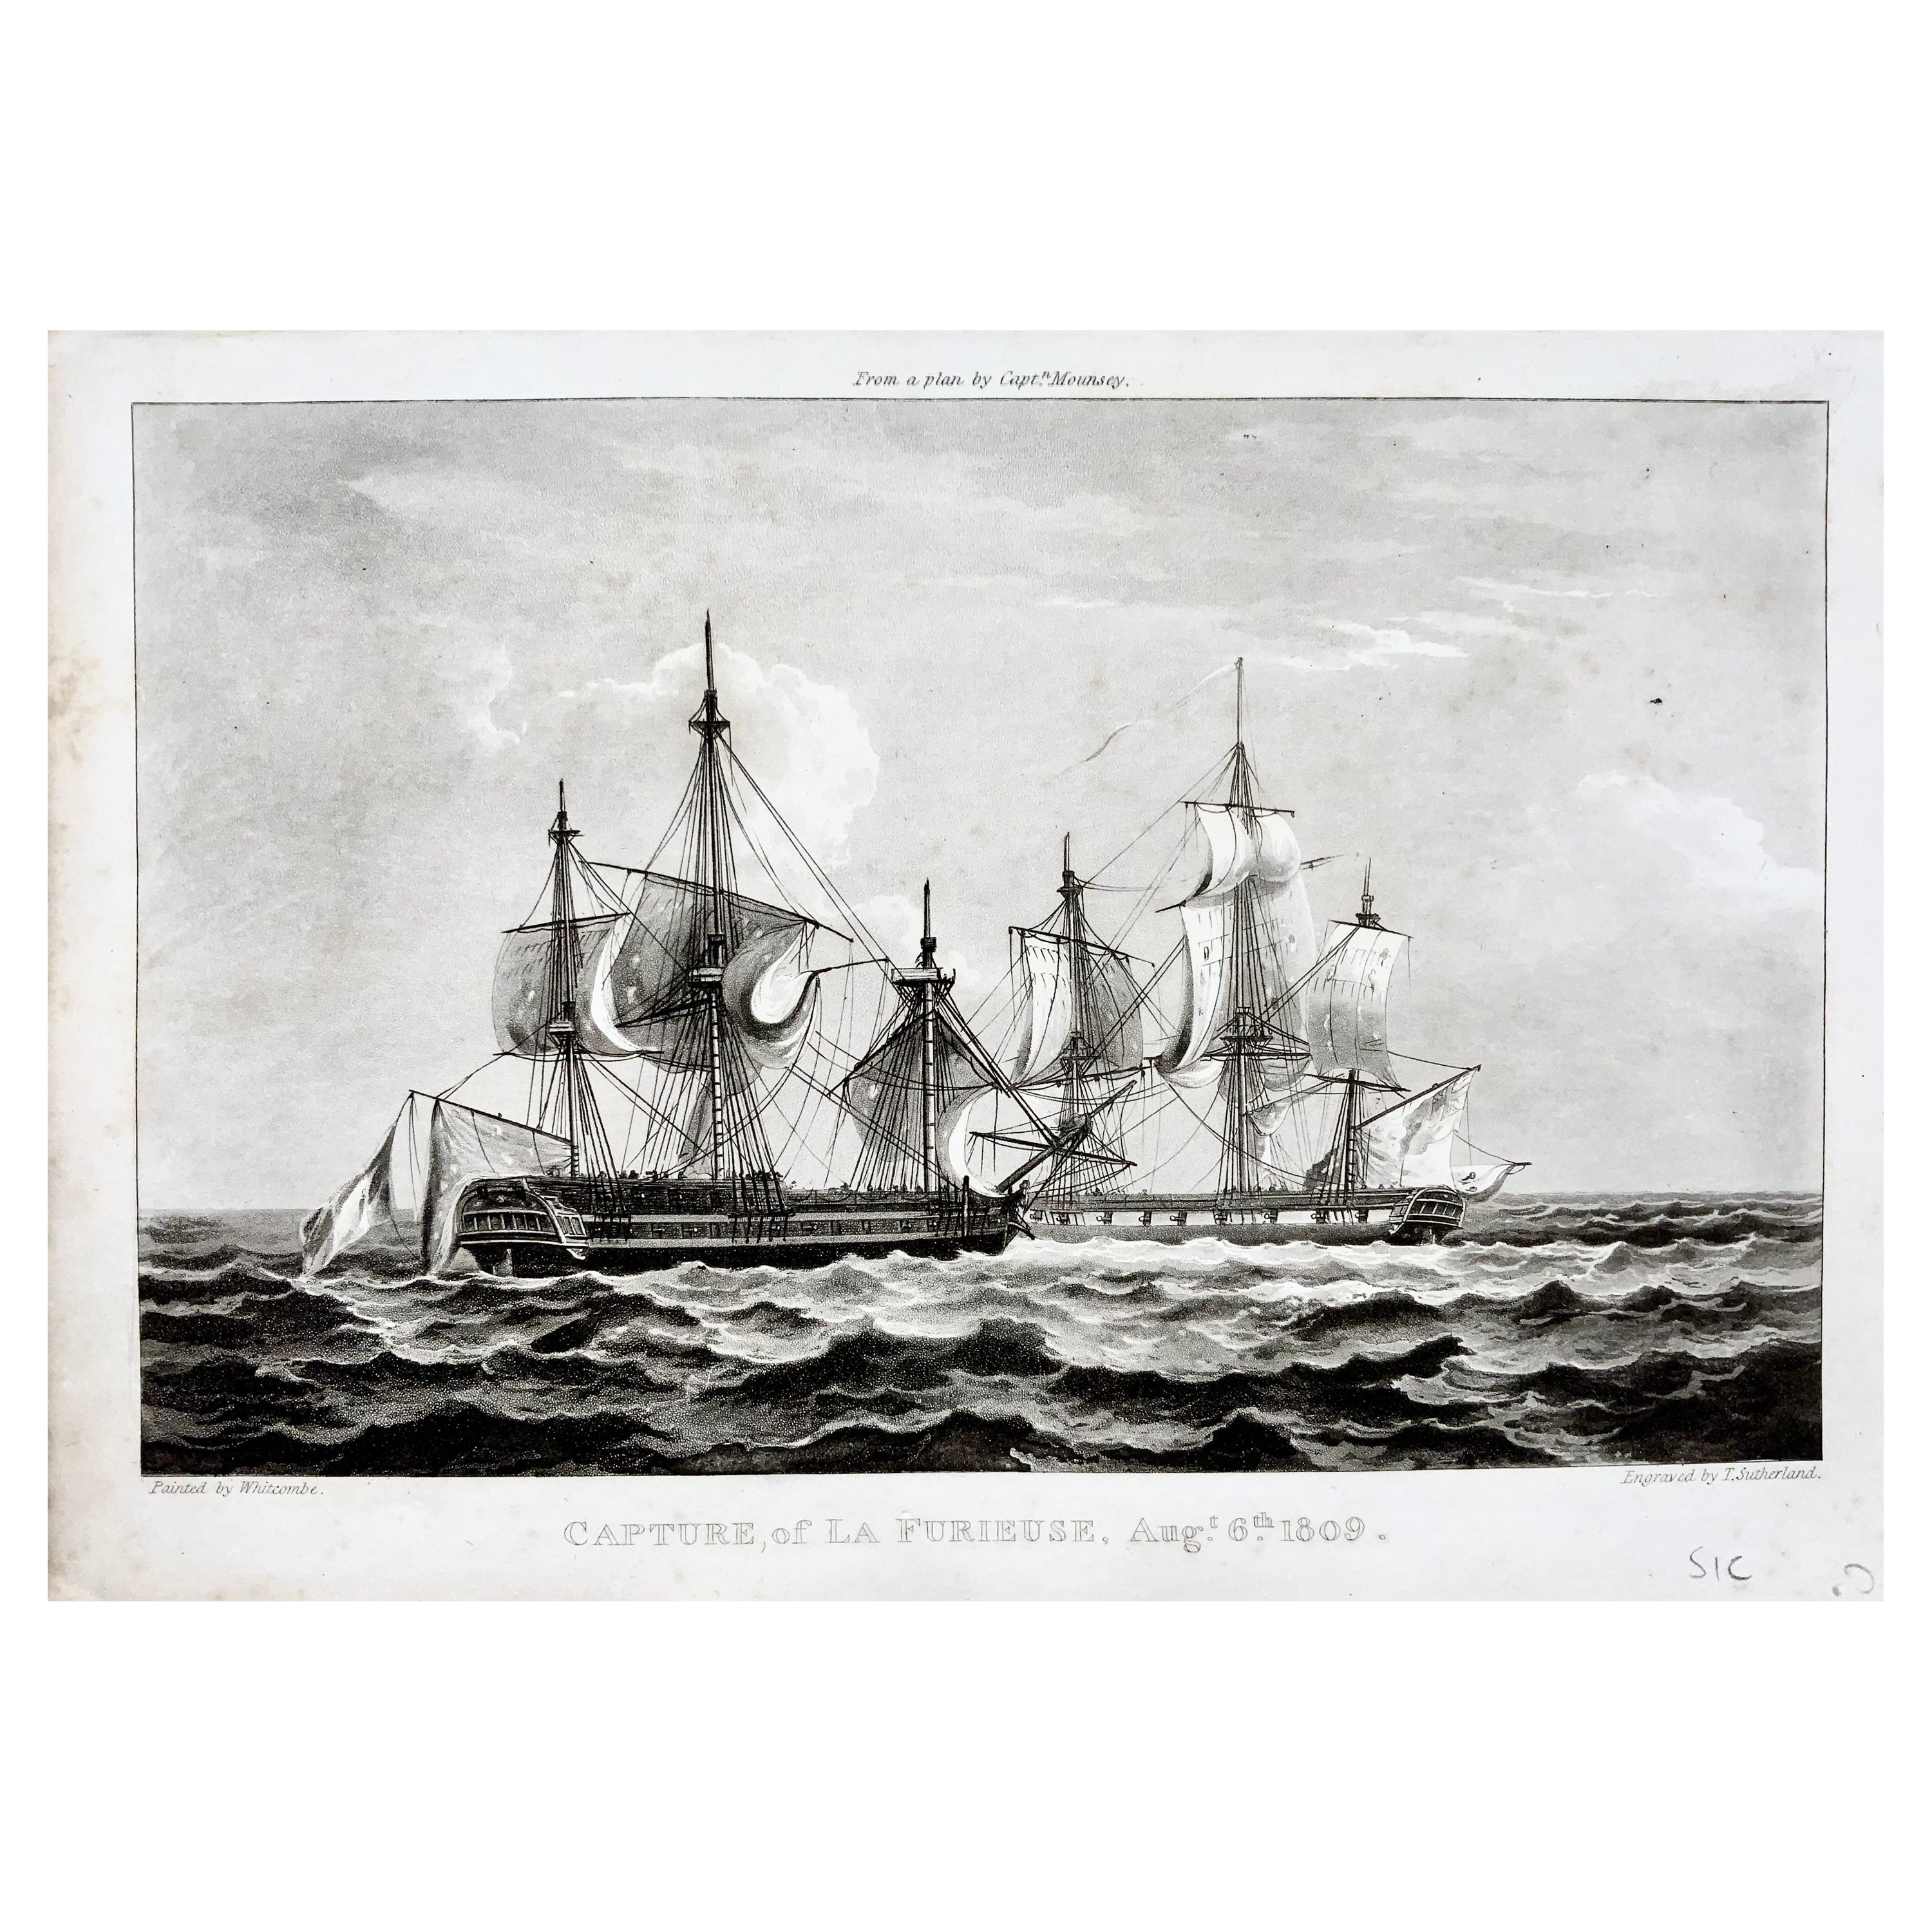 Sutherland, Capture of La Guerrière in 1809, maritime aquatint